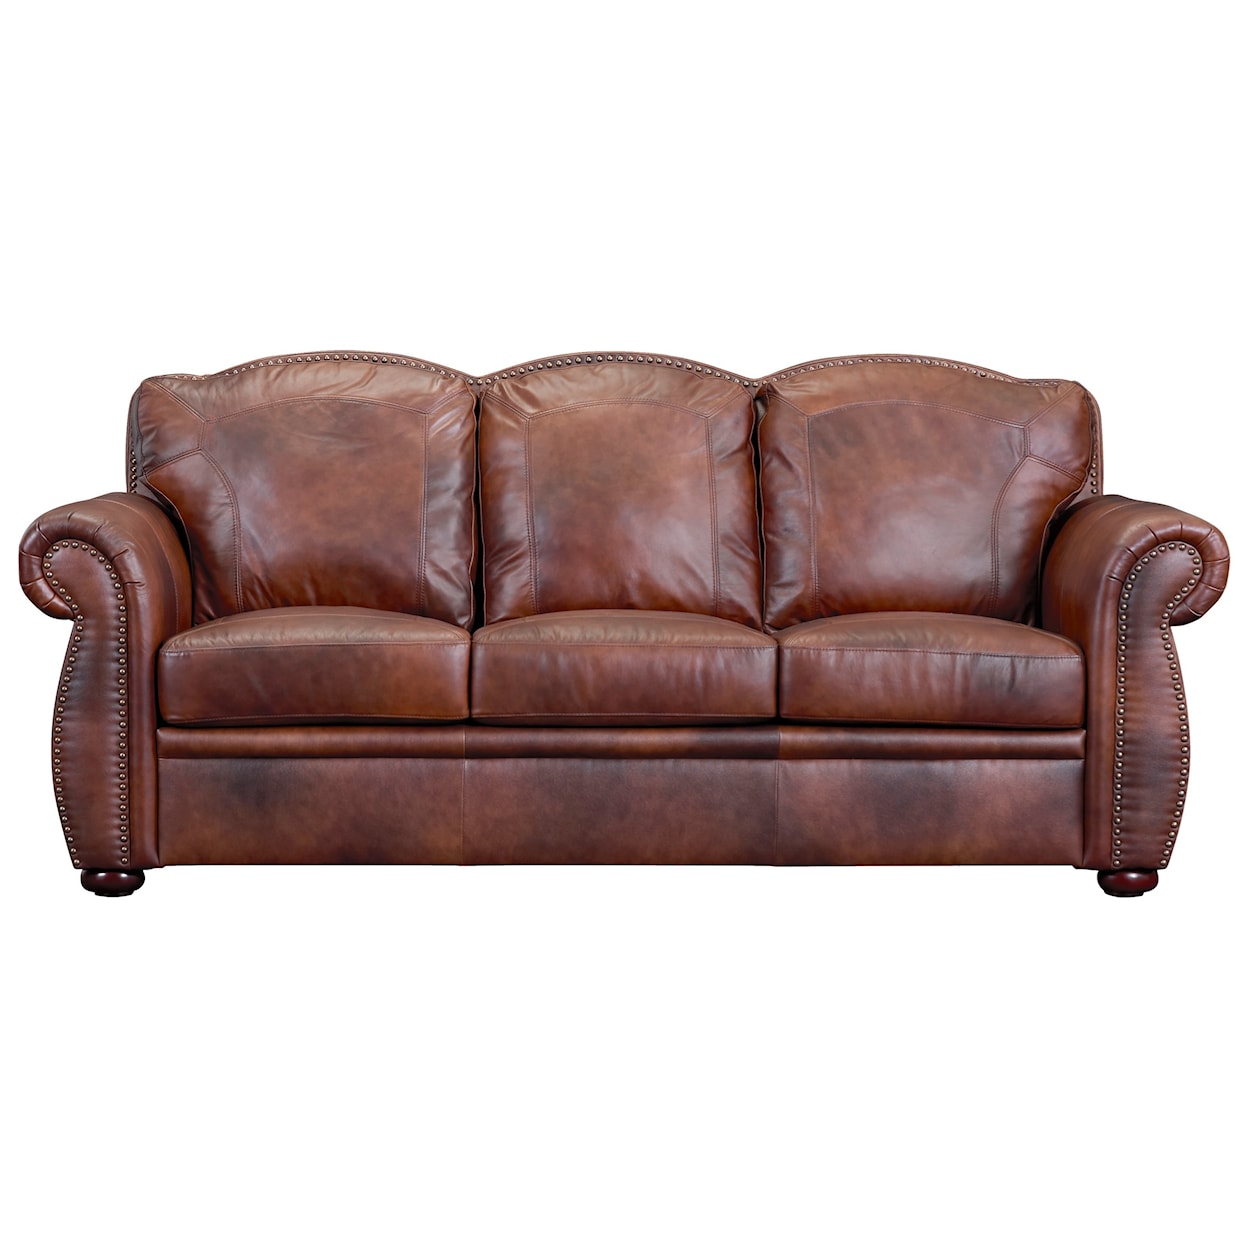 Carolina Leather Arizona Leather Sofa